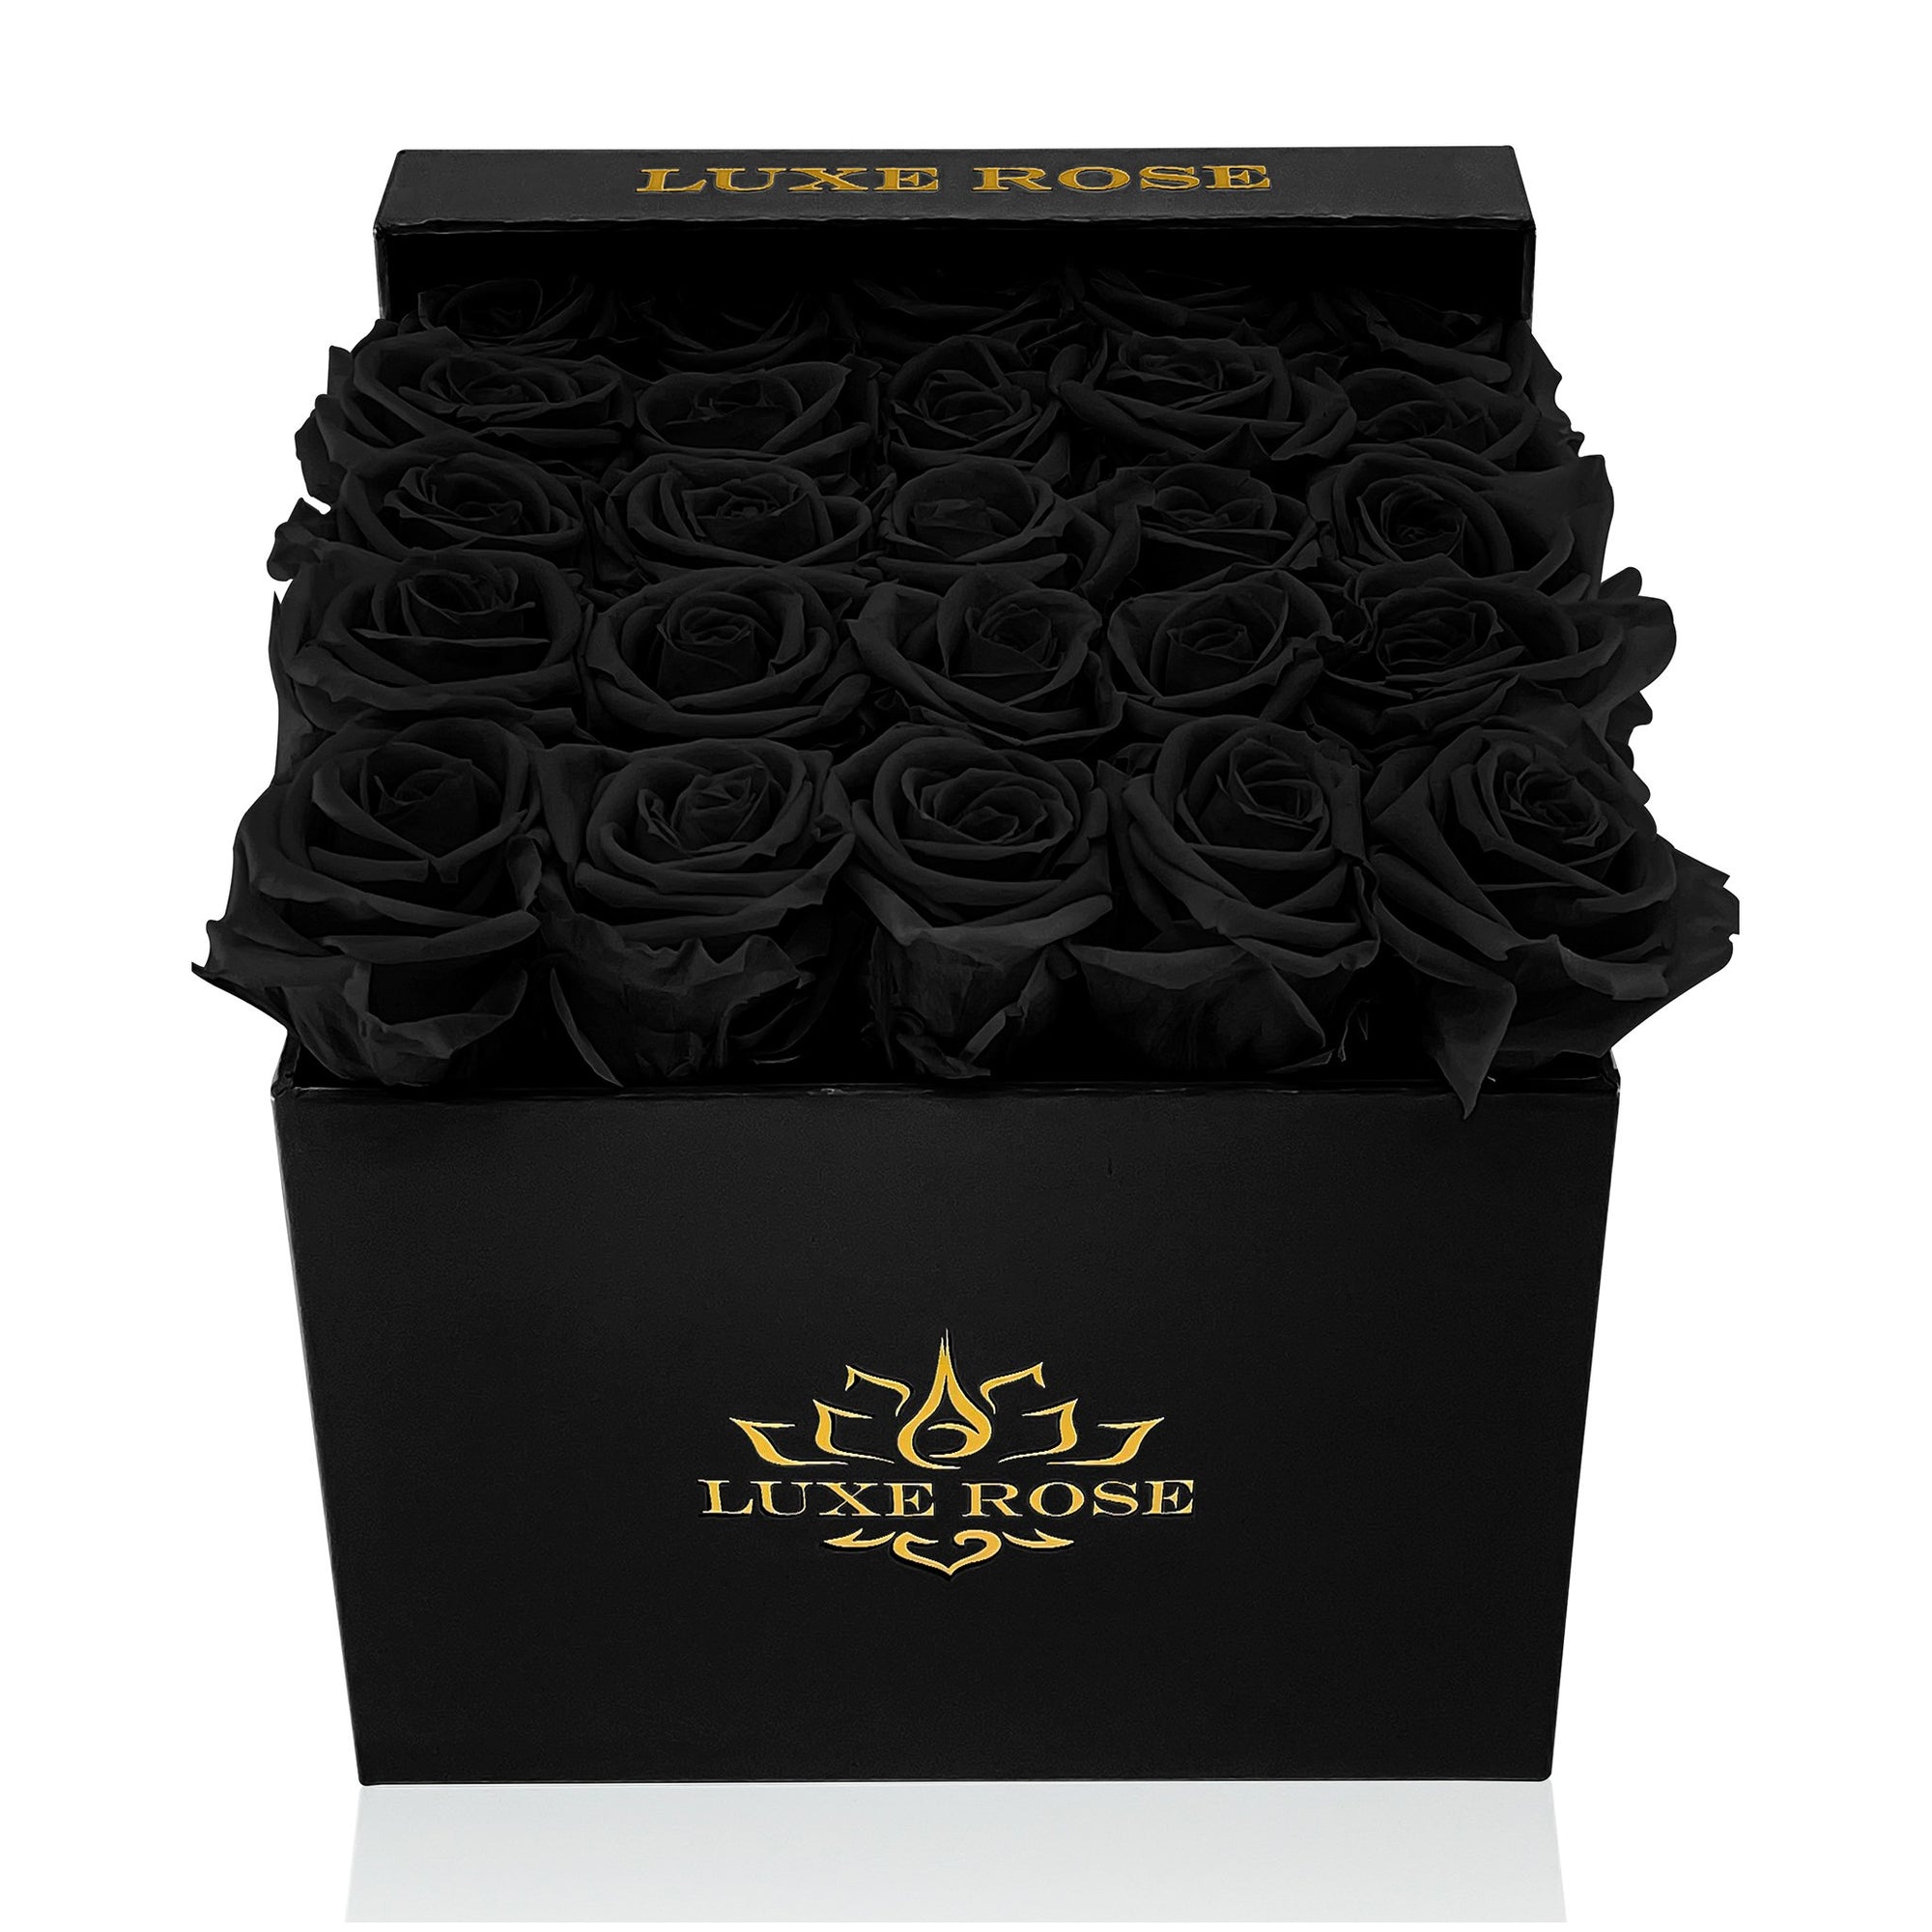 Preserved Roses Small Box | Black - White - Roses